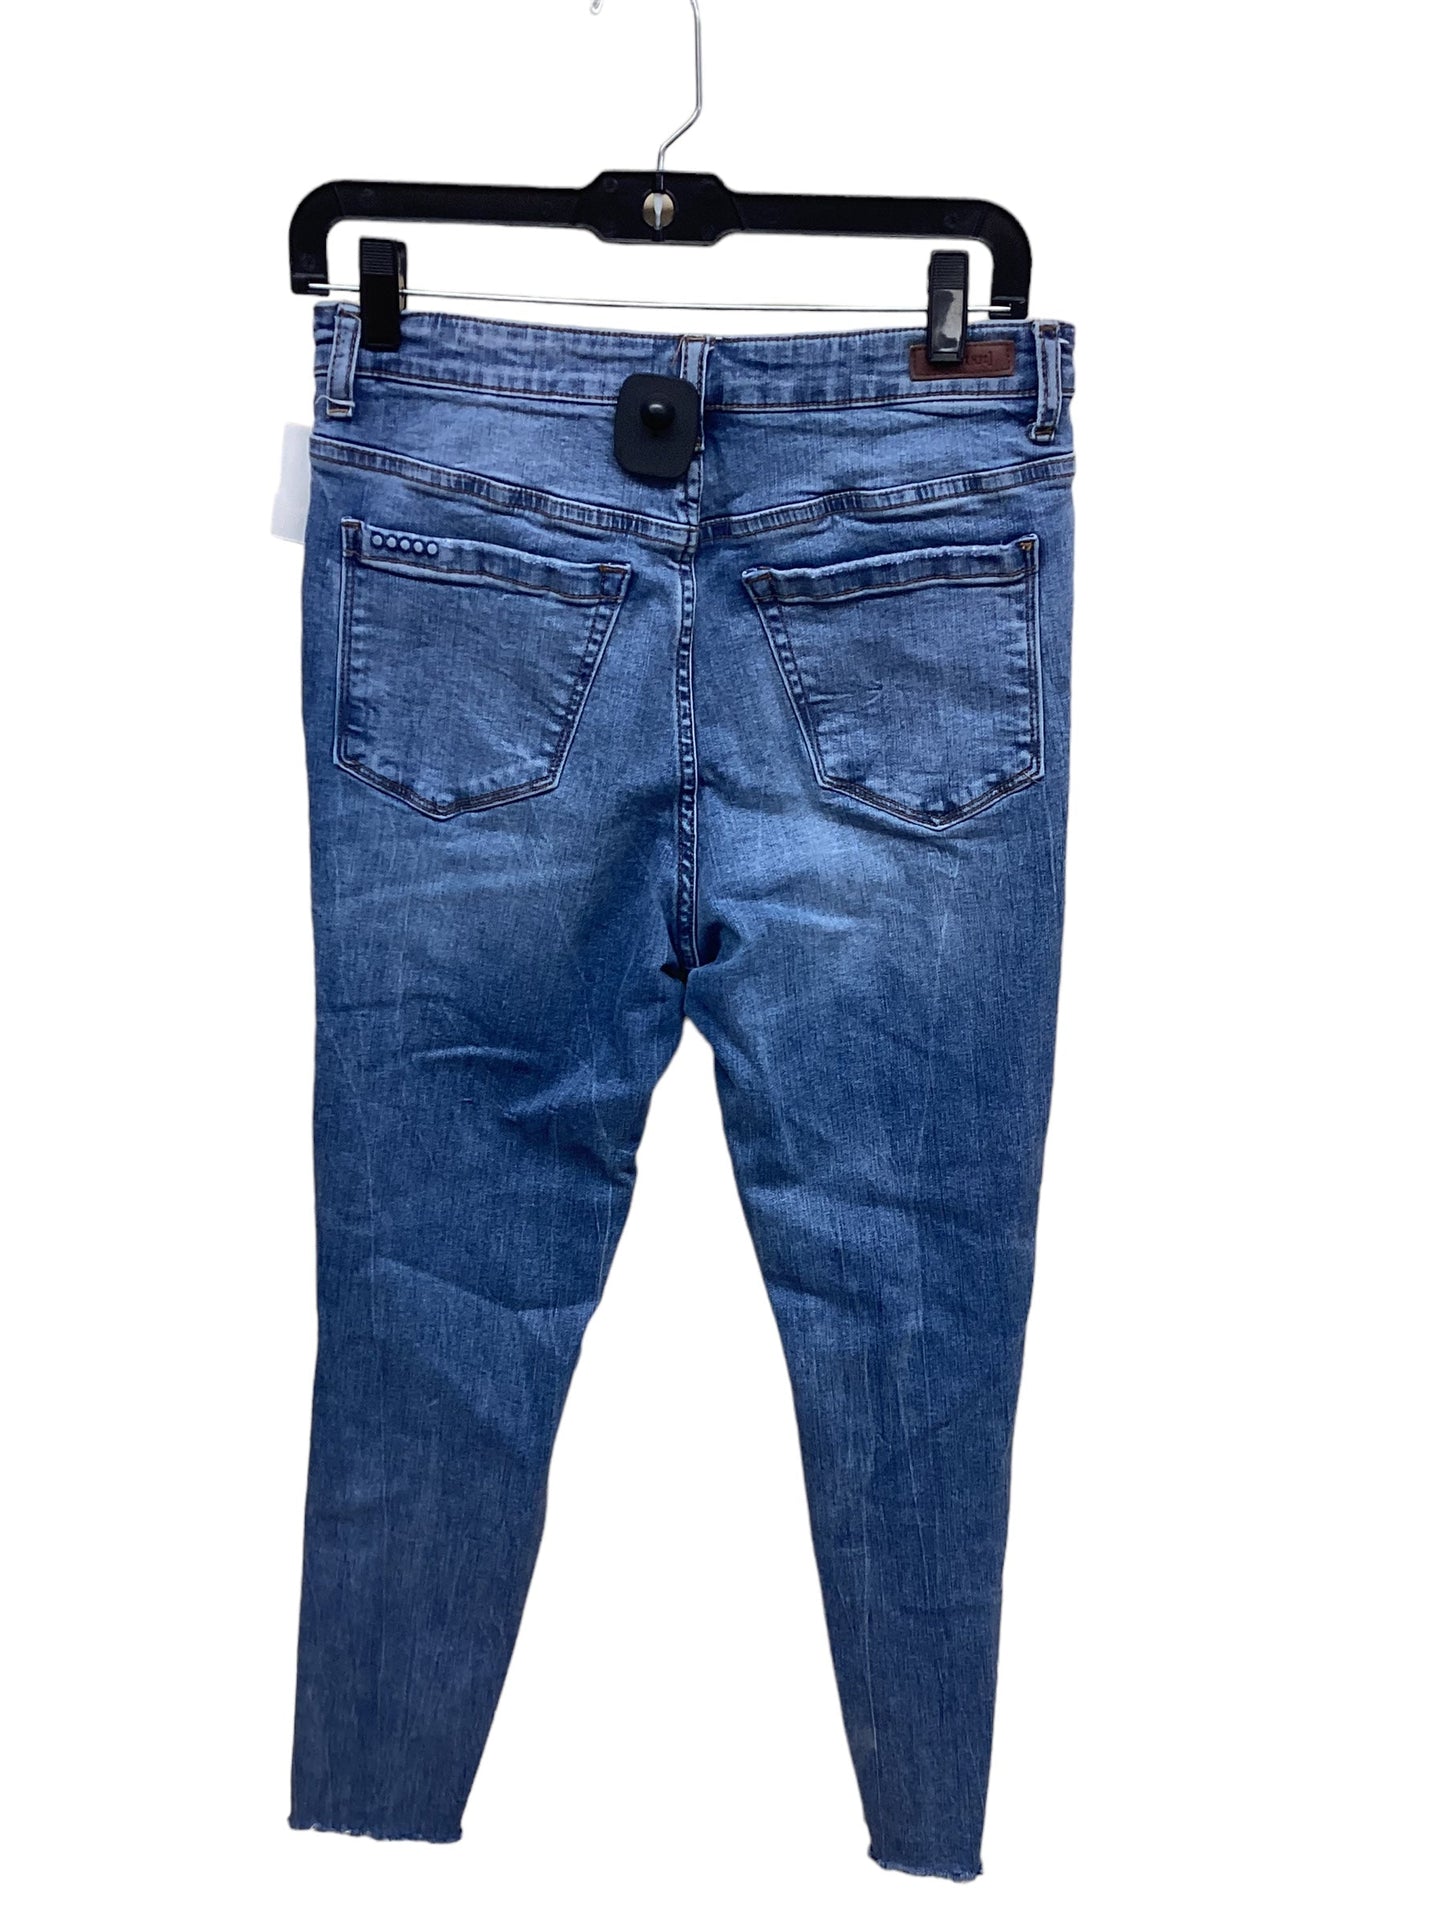 Jeans Skinny By Blanknyc  Size: 8